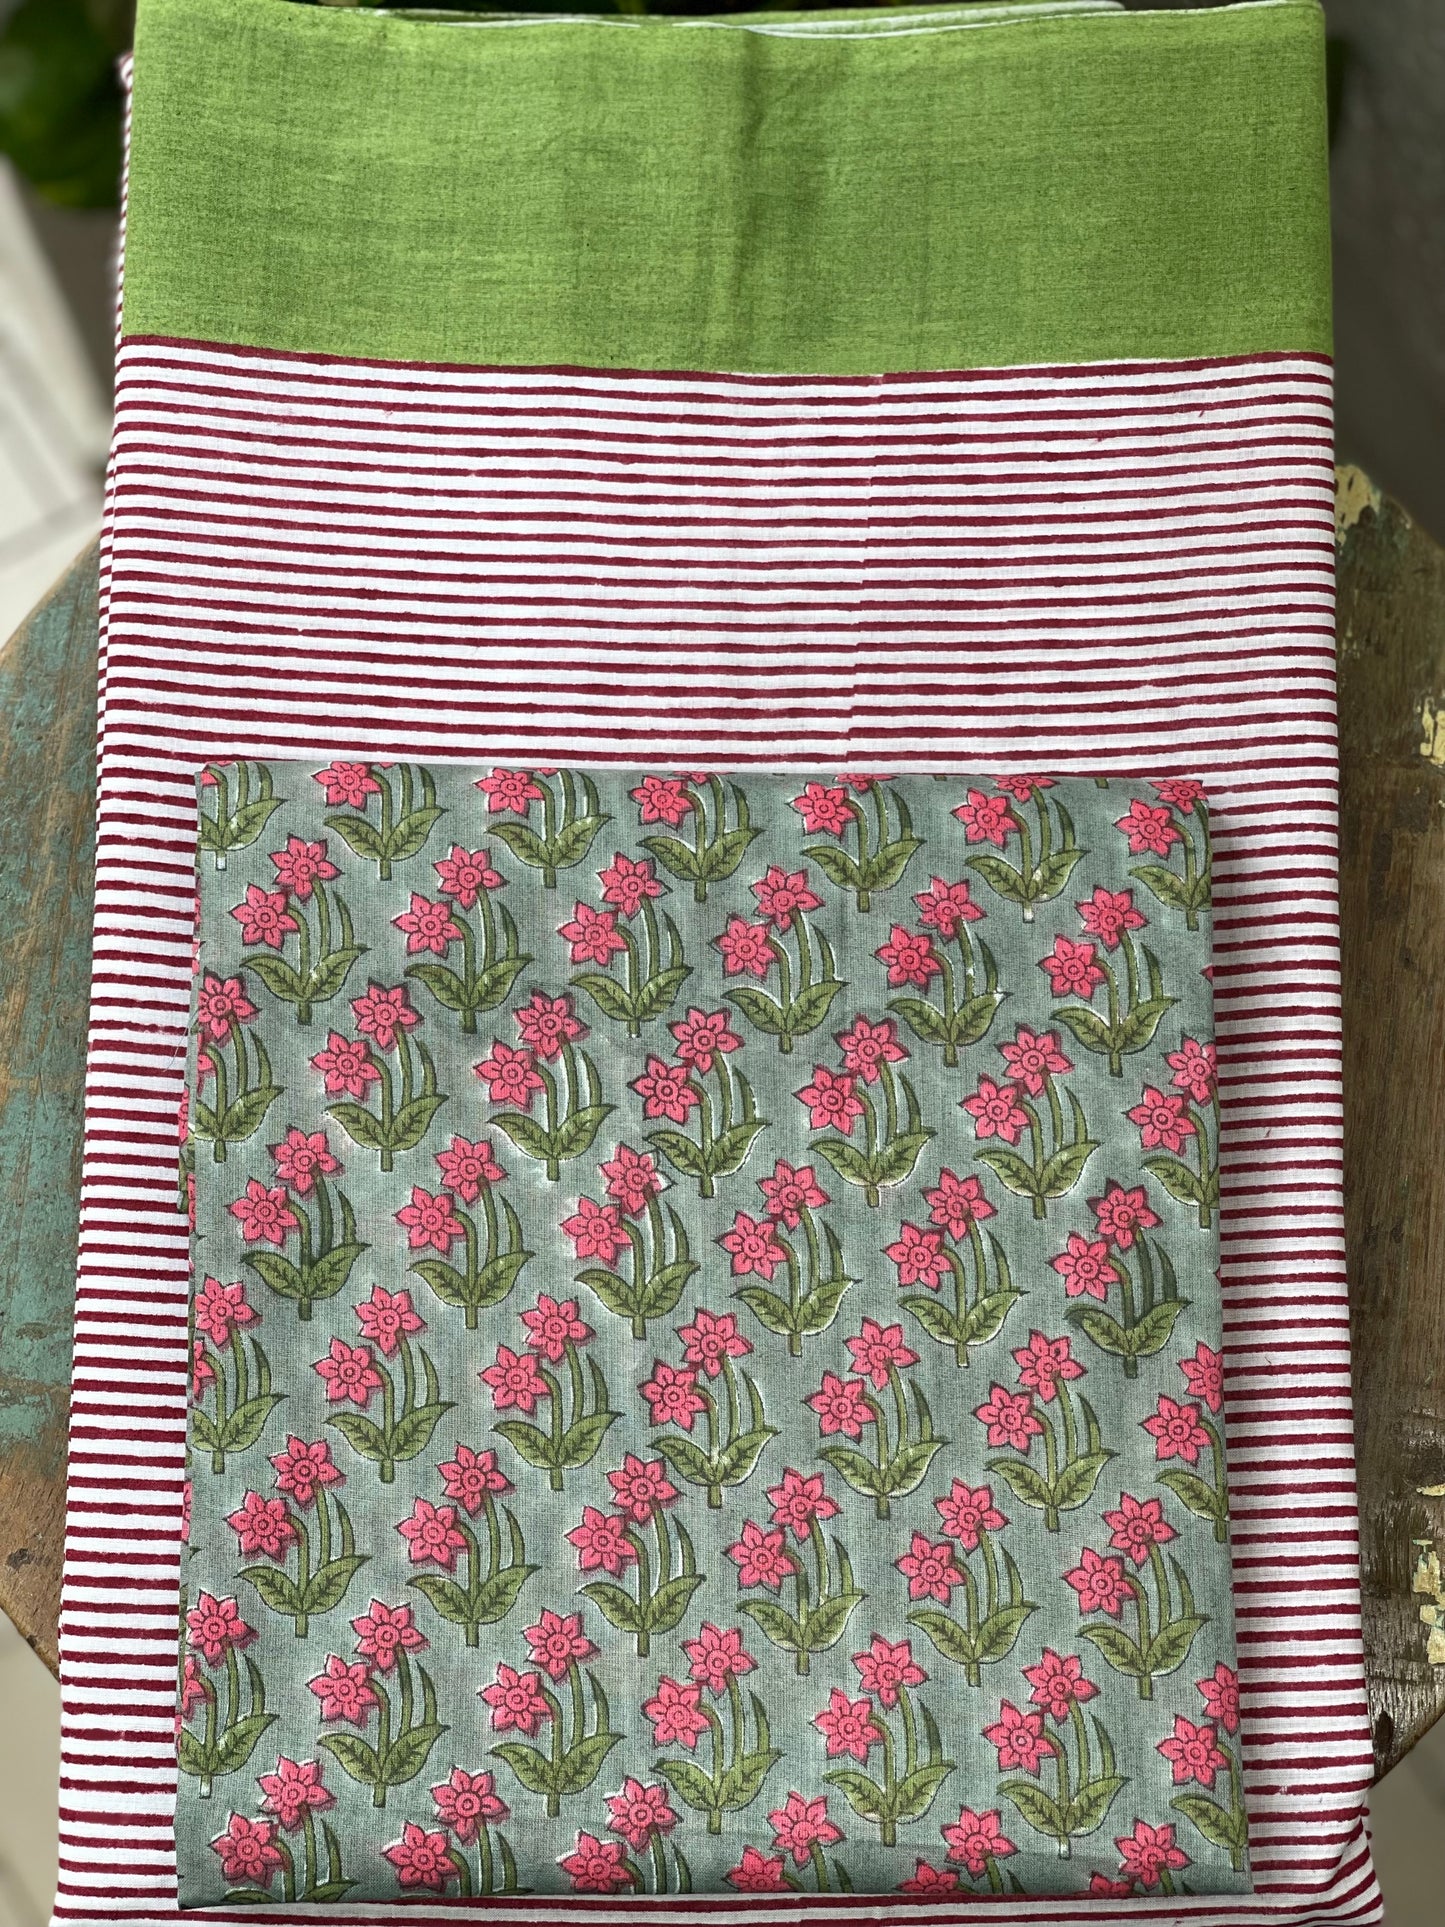 Handloom Cotton Sarees in handblock printed.